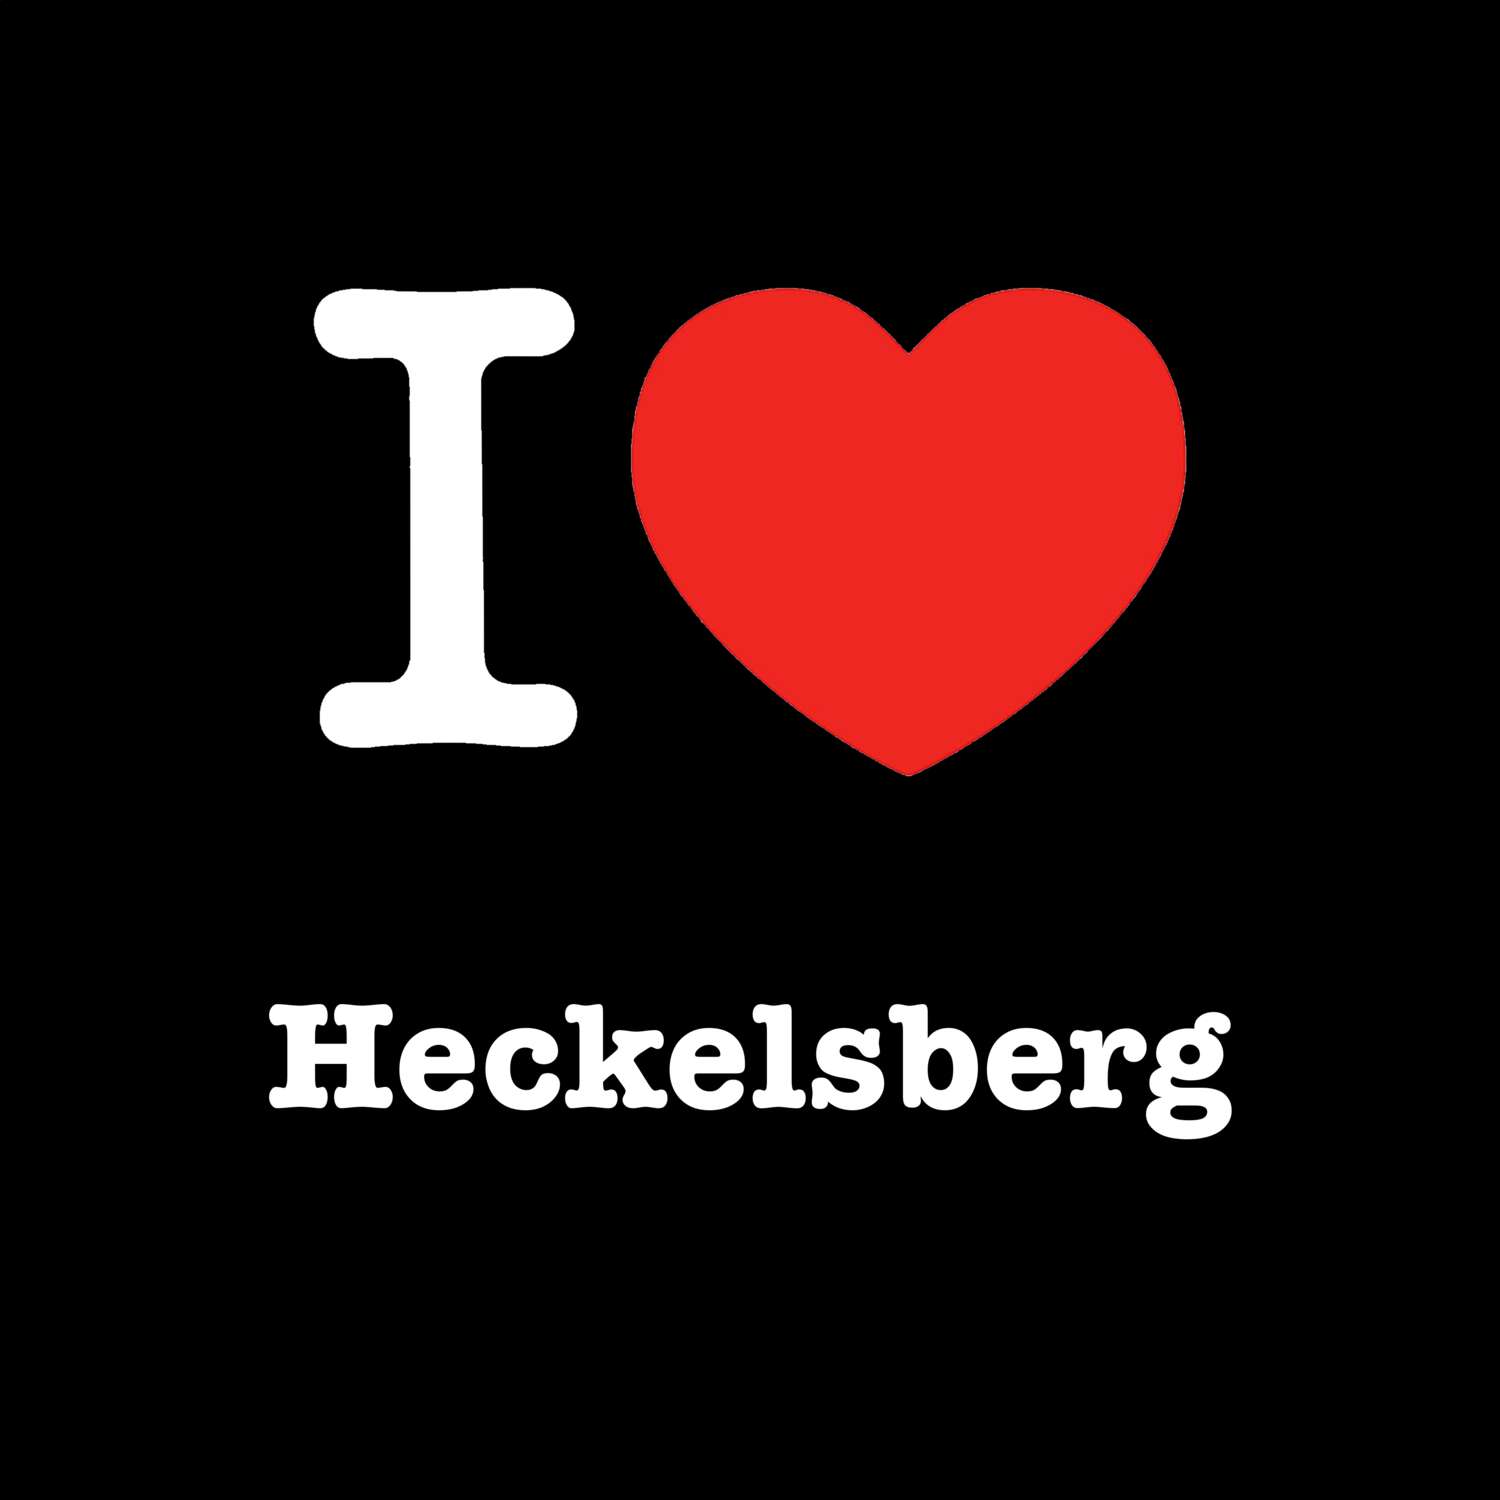 Heckelsberg T-Shirt »I love«